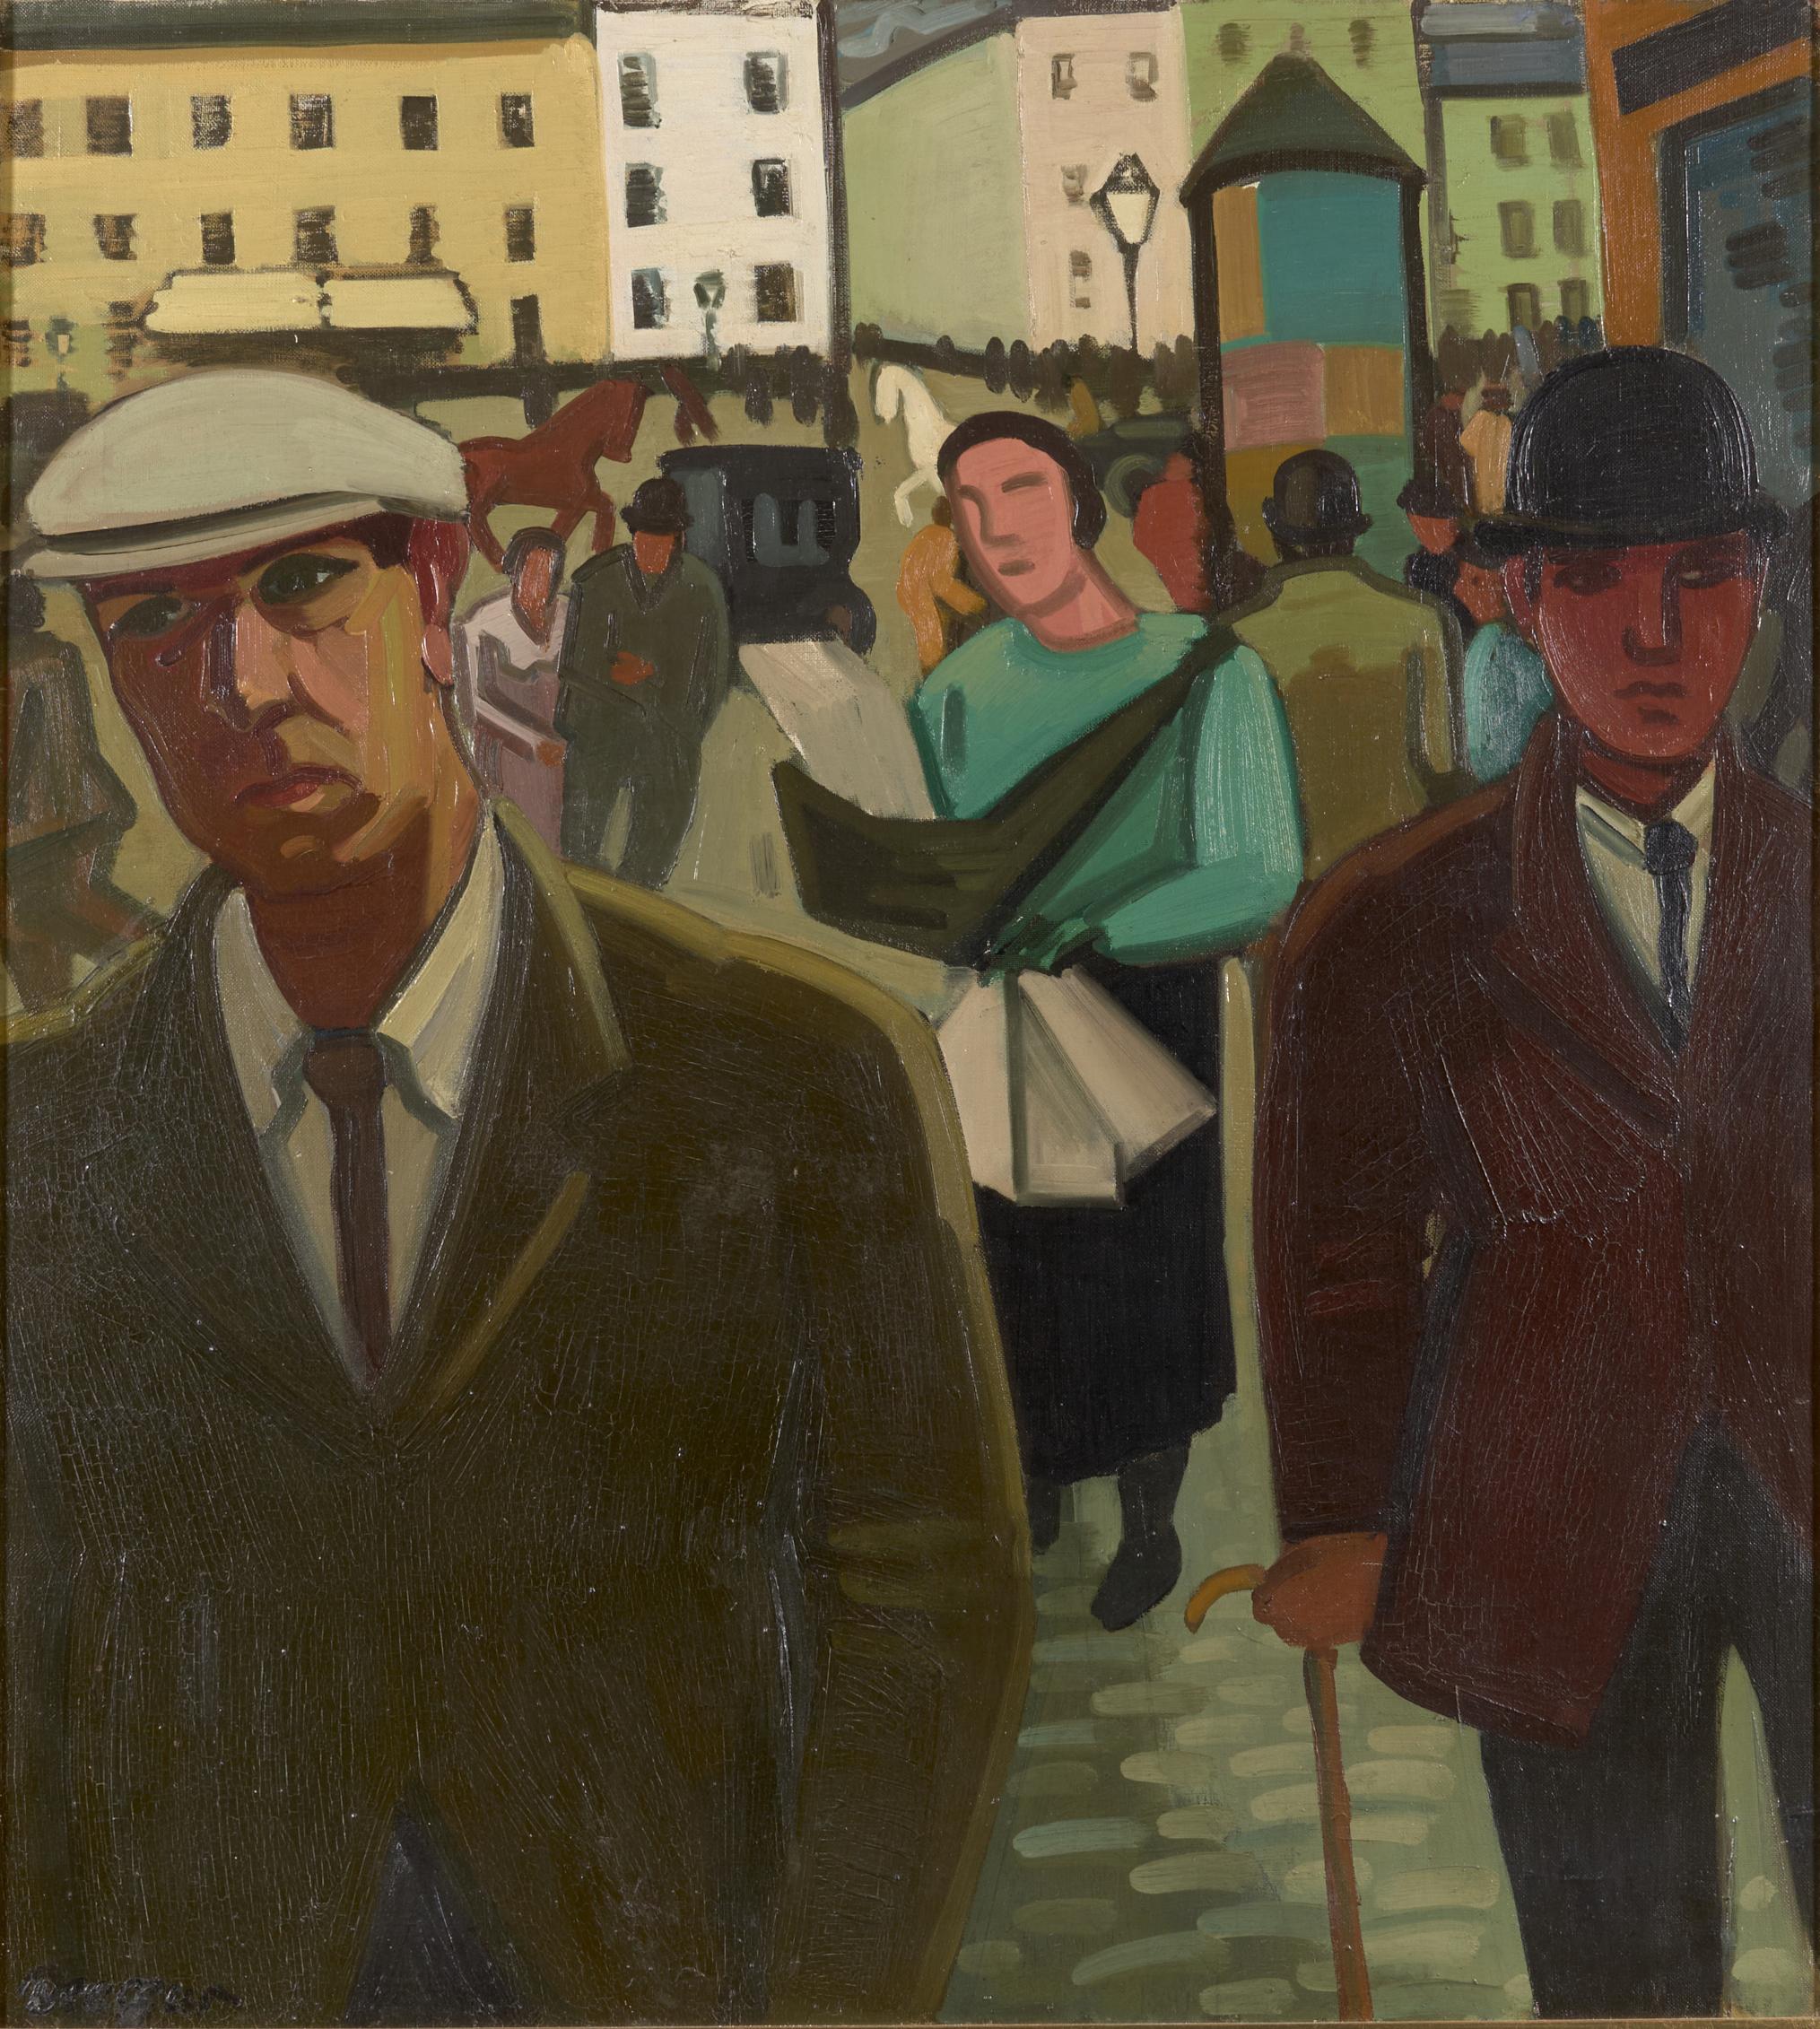 Über den Künstler 
Louis Francois Decoeur (Name 1884 - Name 1960) war ein Maler und Holzschnitzer. Er arbeitete in und um Brüssel und ist vor allem für seine ländlichen Szenen des bäuerlichen Lebens bekannt. Die Landschaft rund um die Hauptstadt